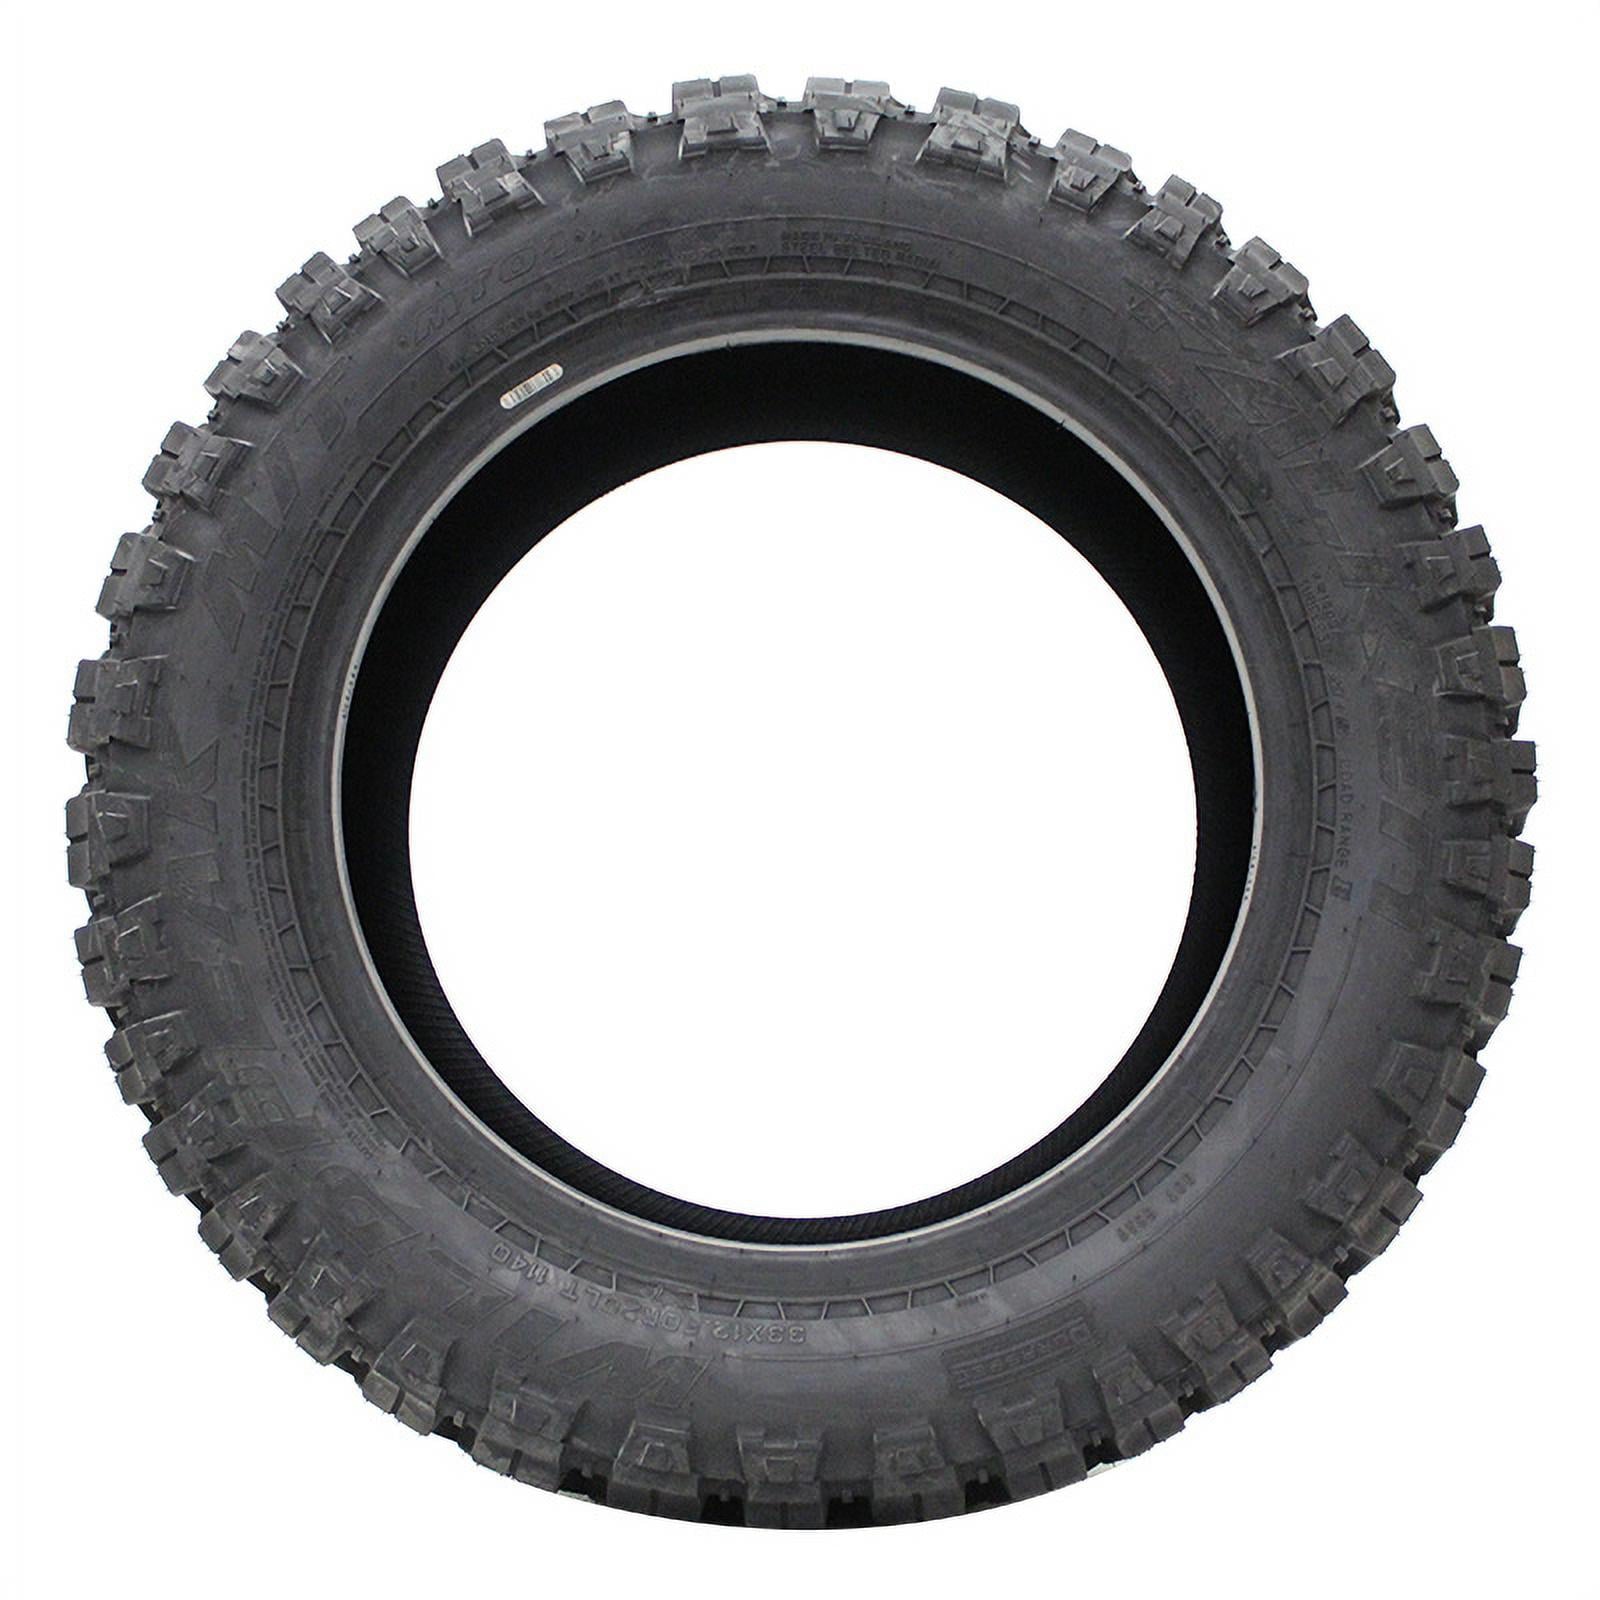 Falken Wildpeak M/T MT01 All-Season Tire - LT285/70R17 LRE 10PLY Rated